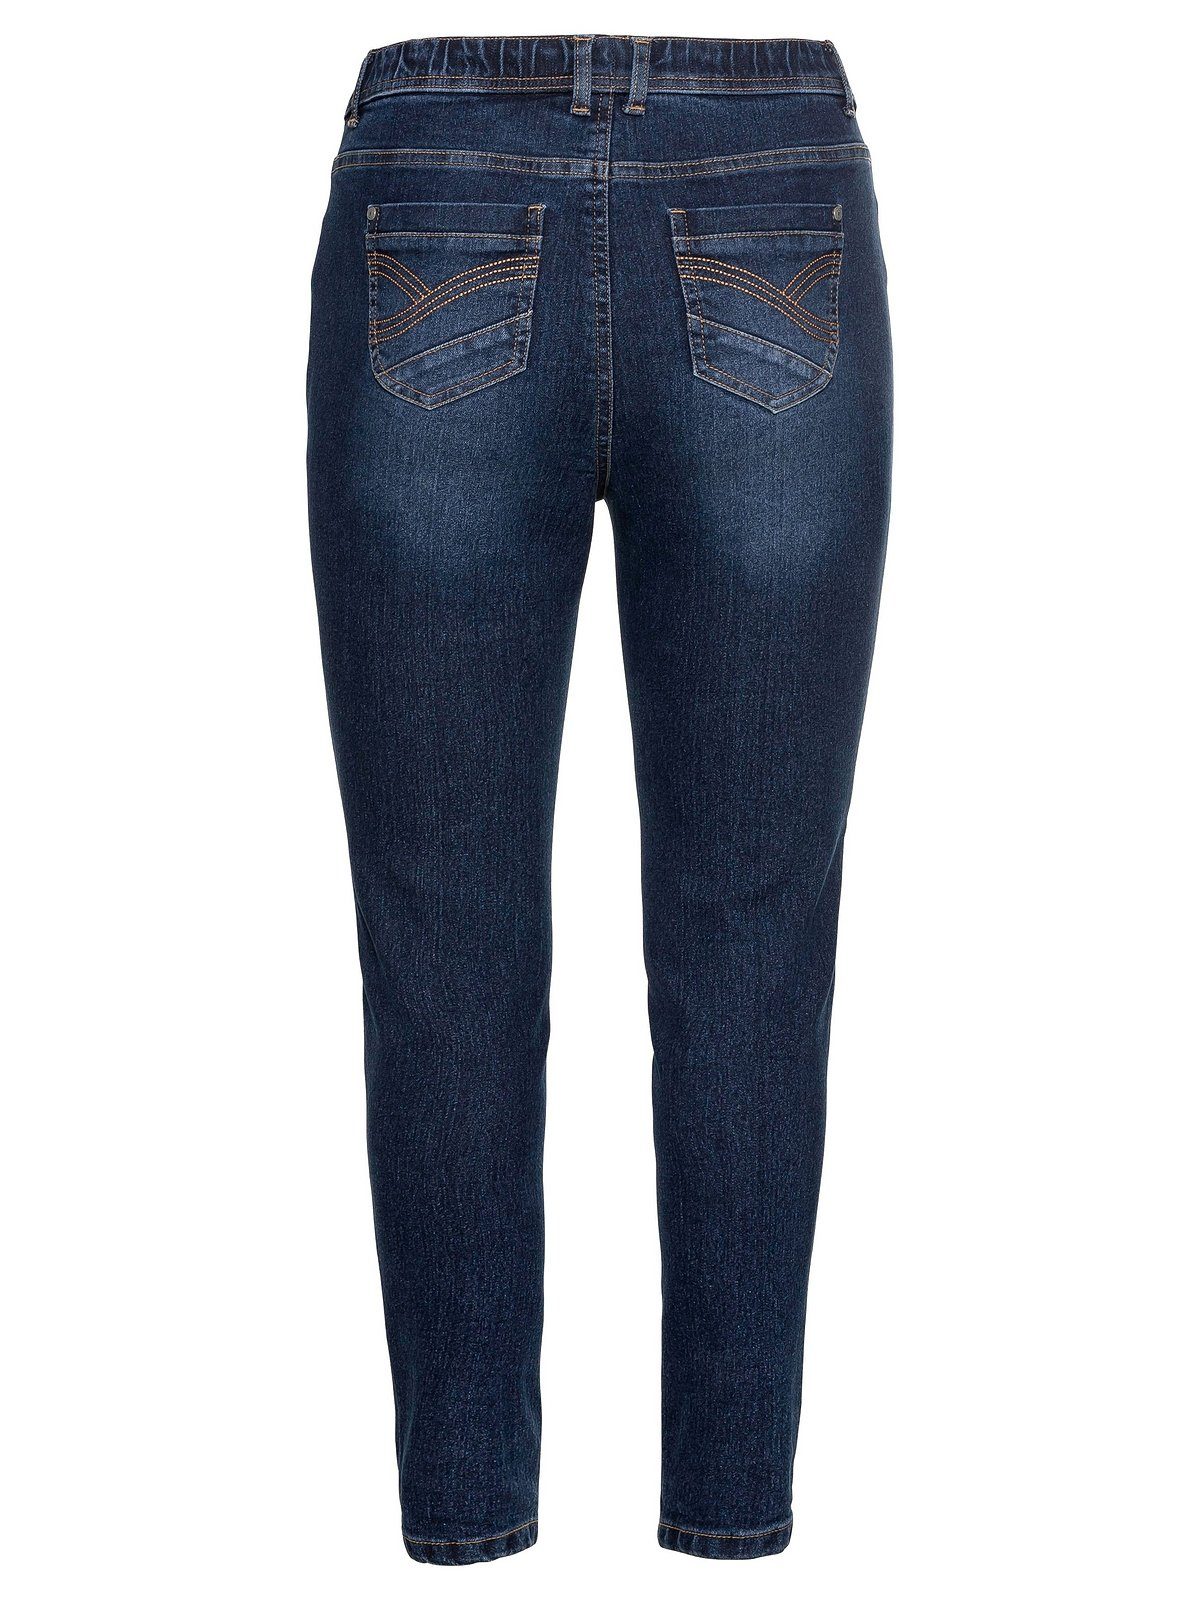 Sheego Stretch-Jeans Größen Große und Gürtelschlaufen dark blue Denim mit Gummibund